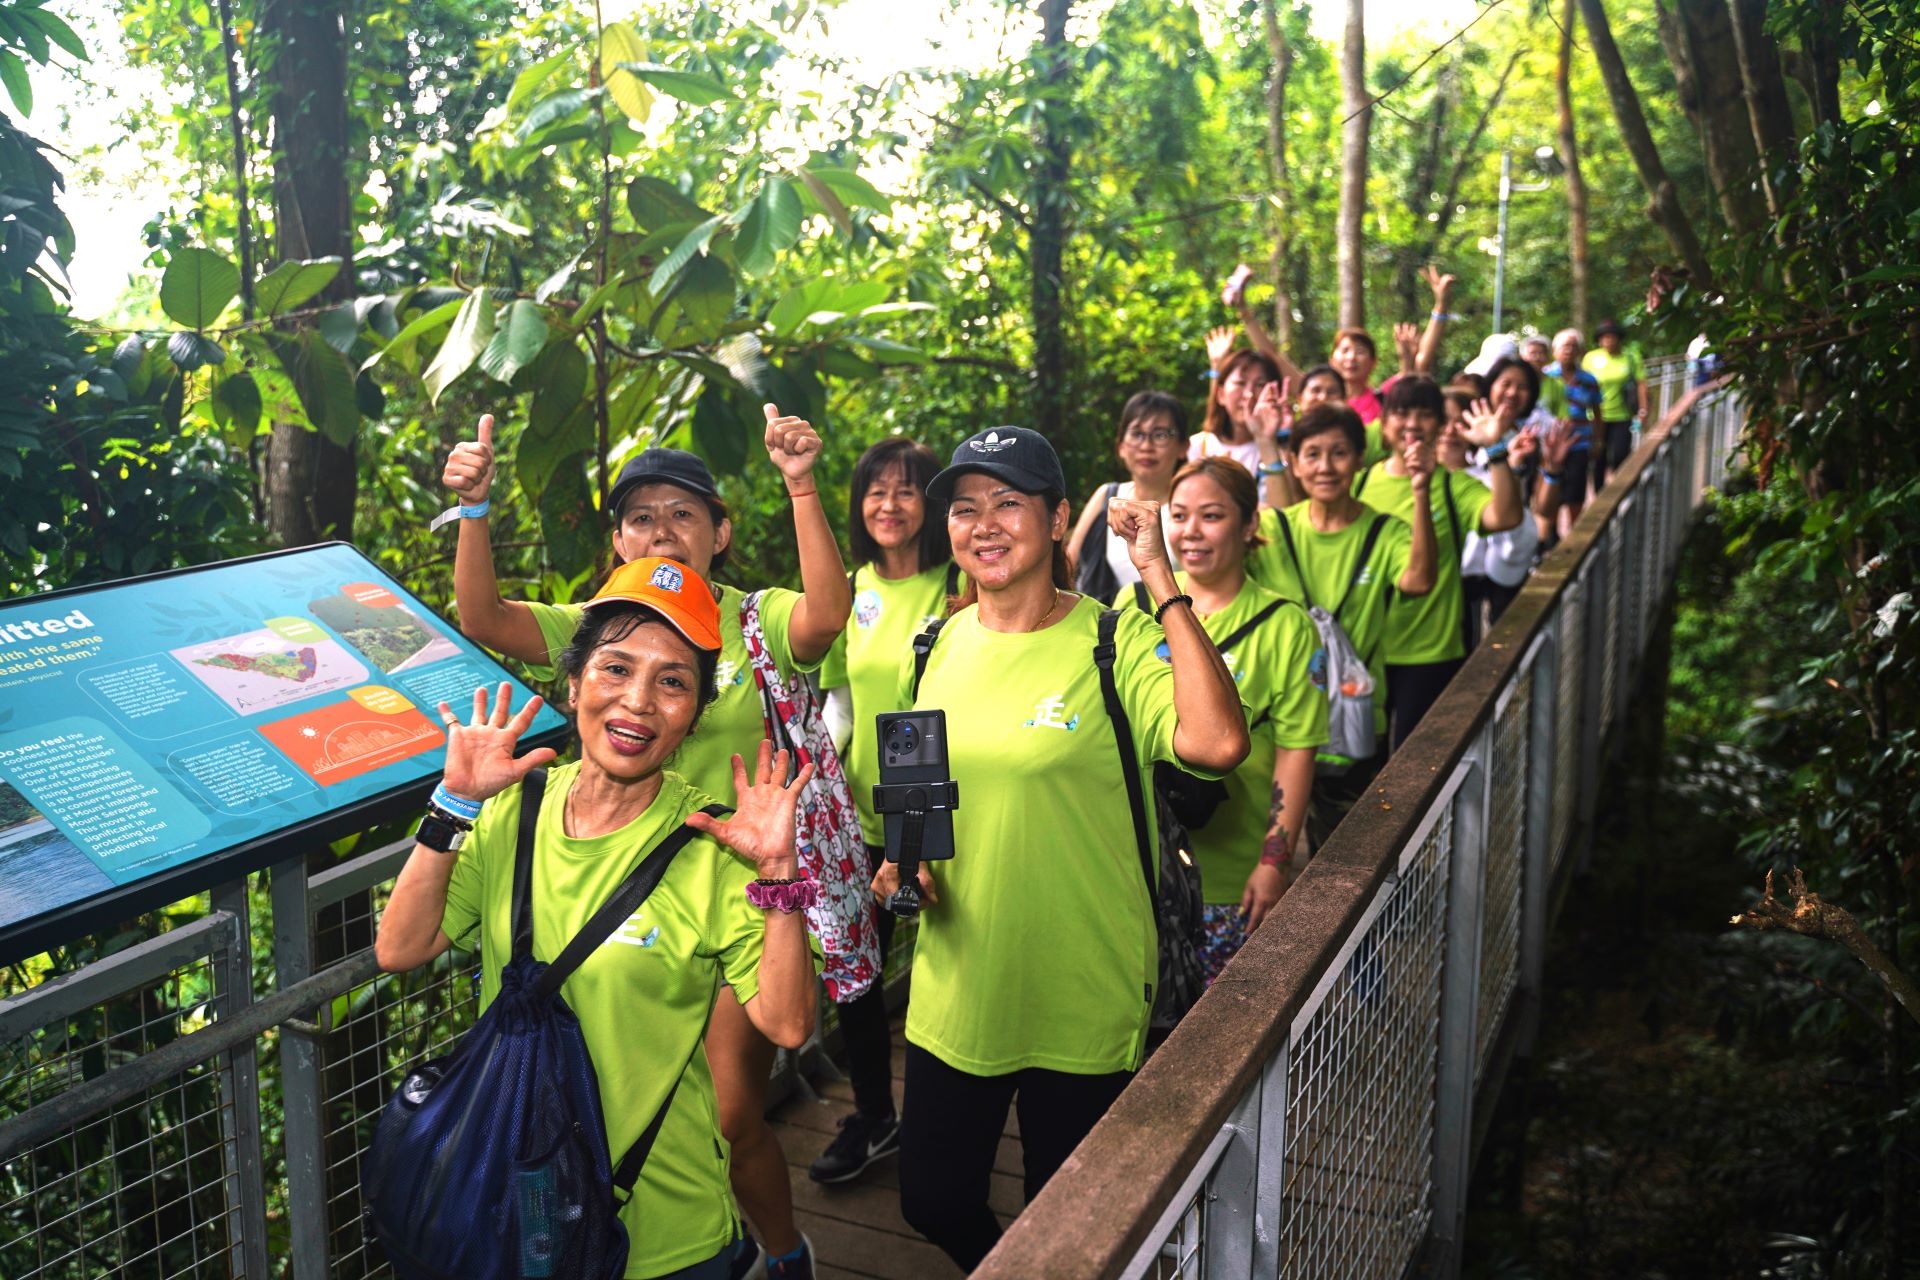 老朋友趴趴走 PaPaZao participants smiling and waving at the camera on their walk at Sentosa Island, Singapore.